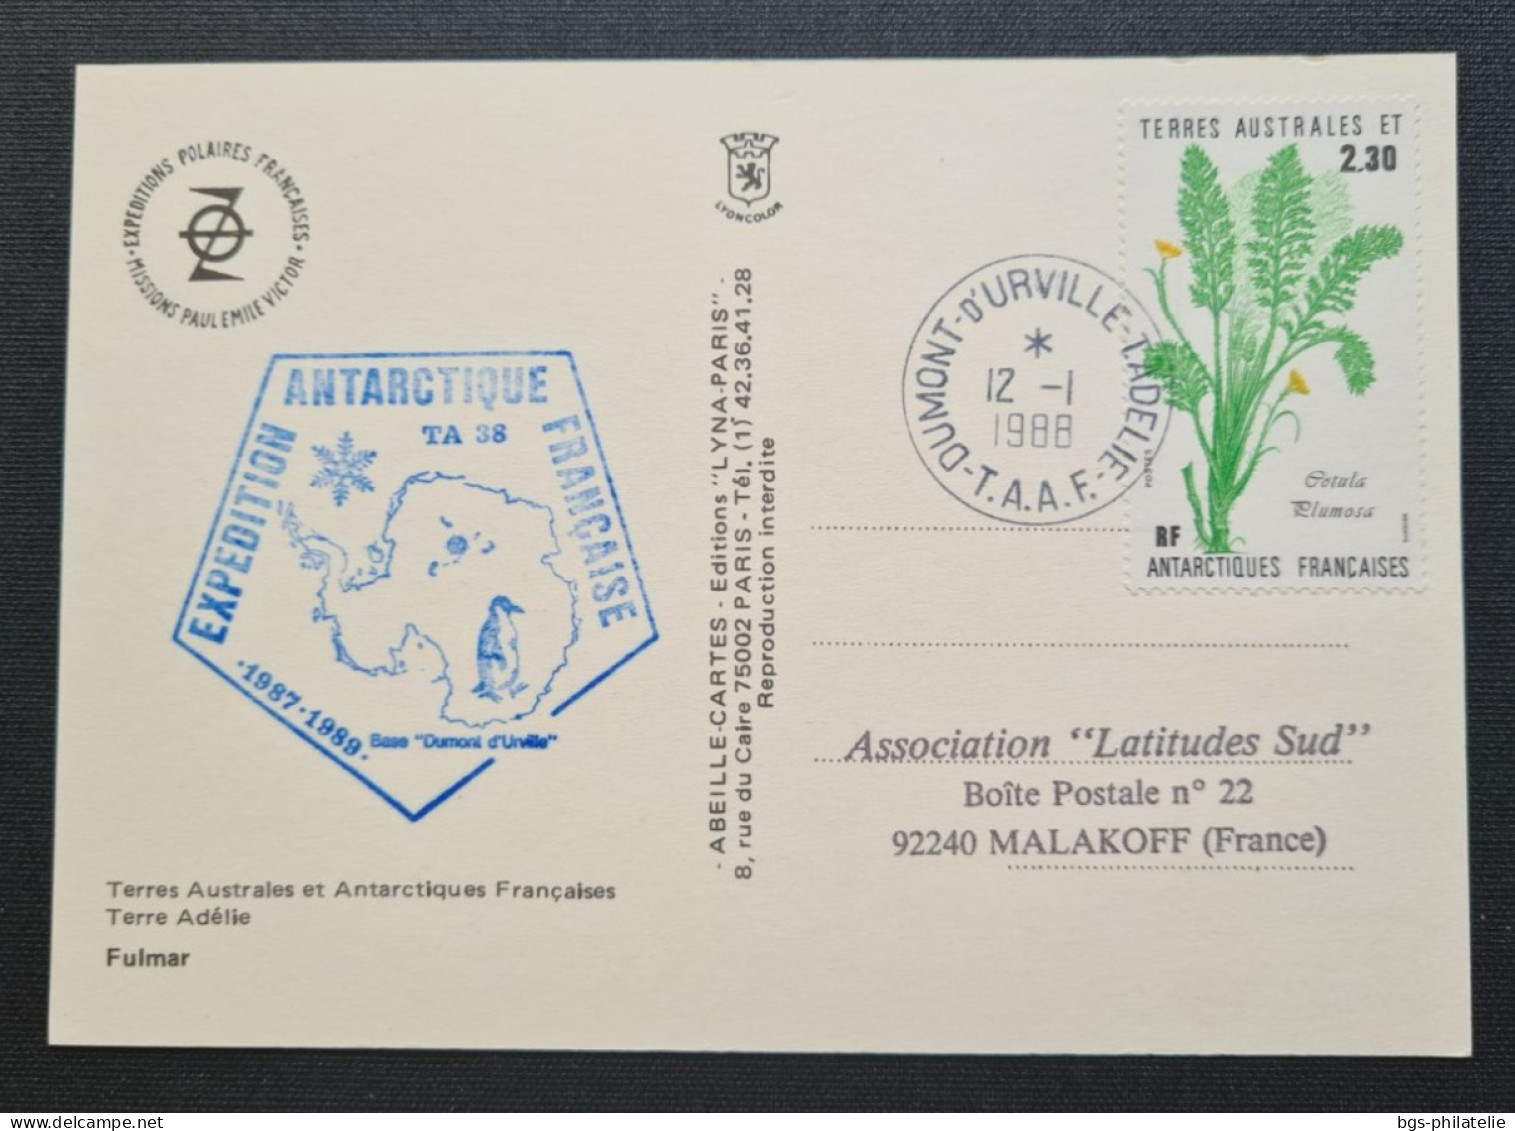 TAAF, T Numéro 118 Oblitéré De Terre Adélie Le 12/1/1988 Sur Carte. - Lettres & Documents